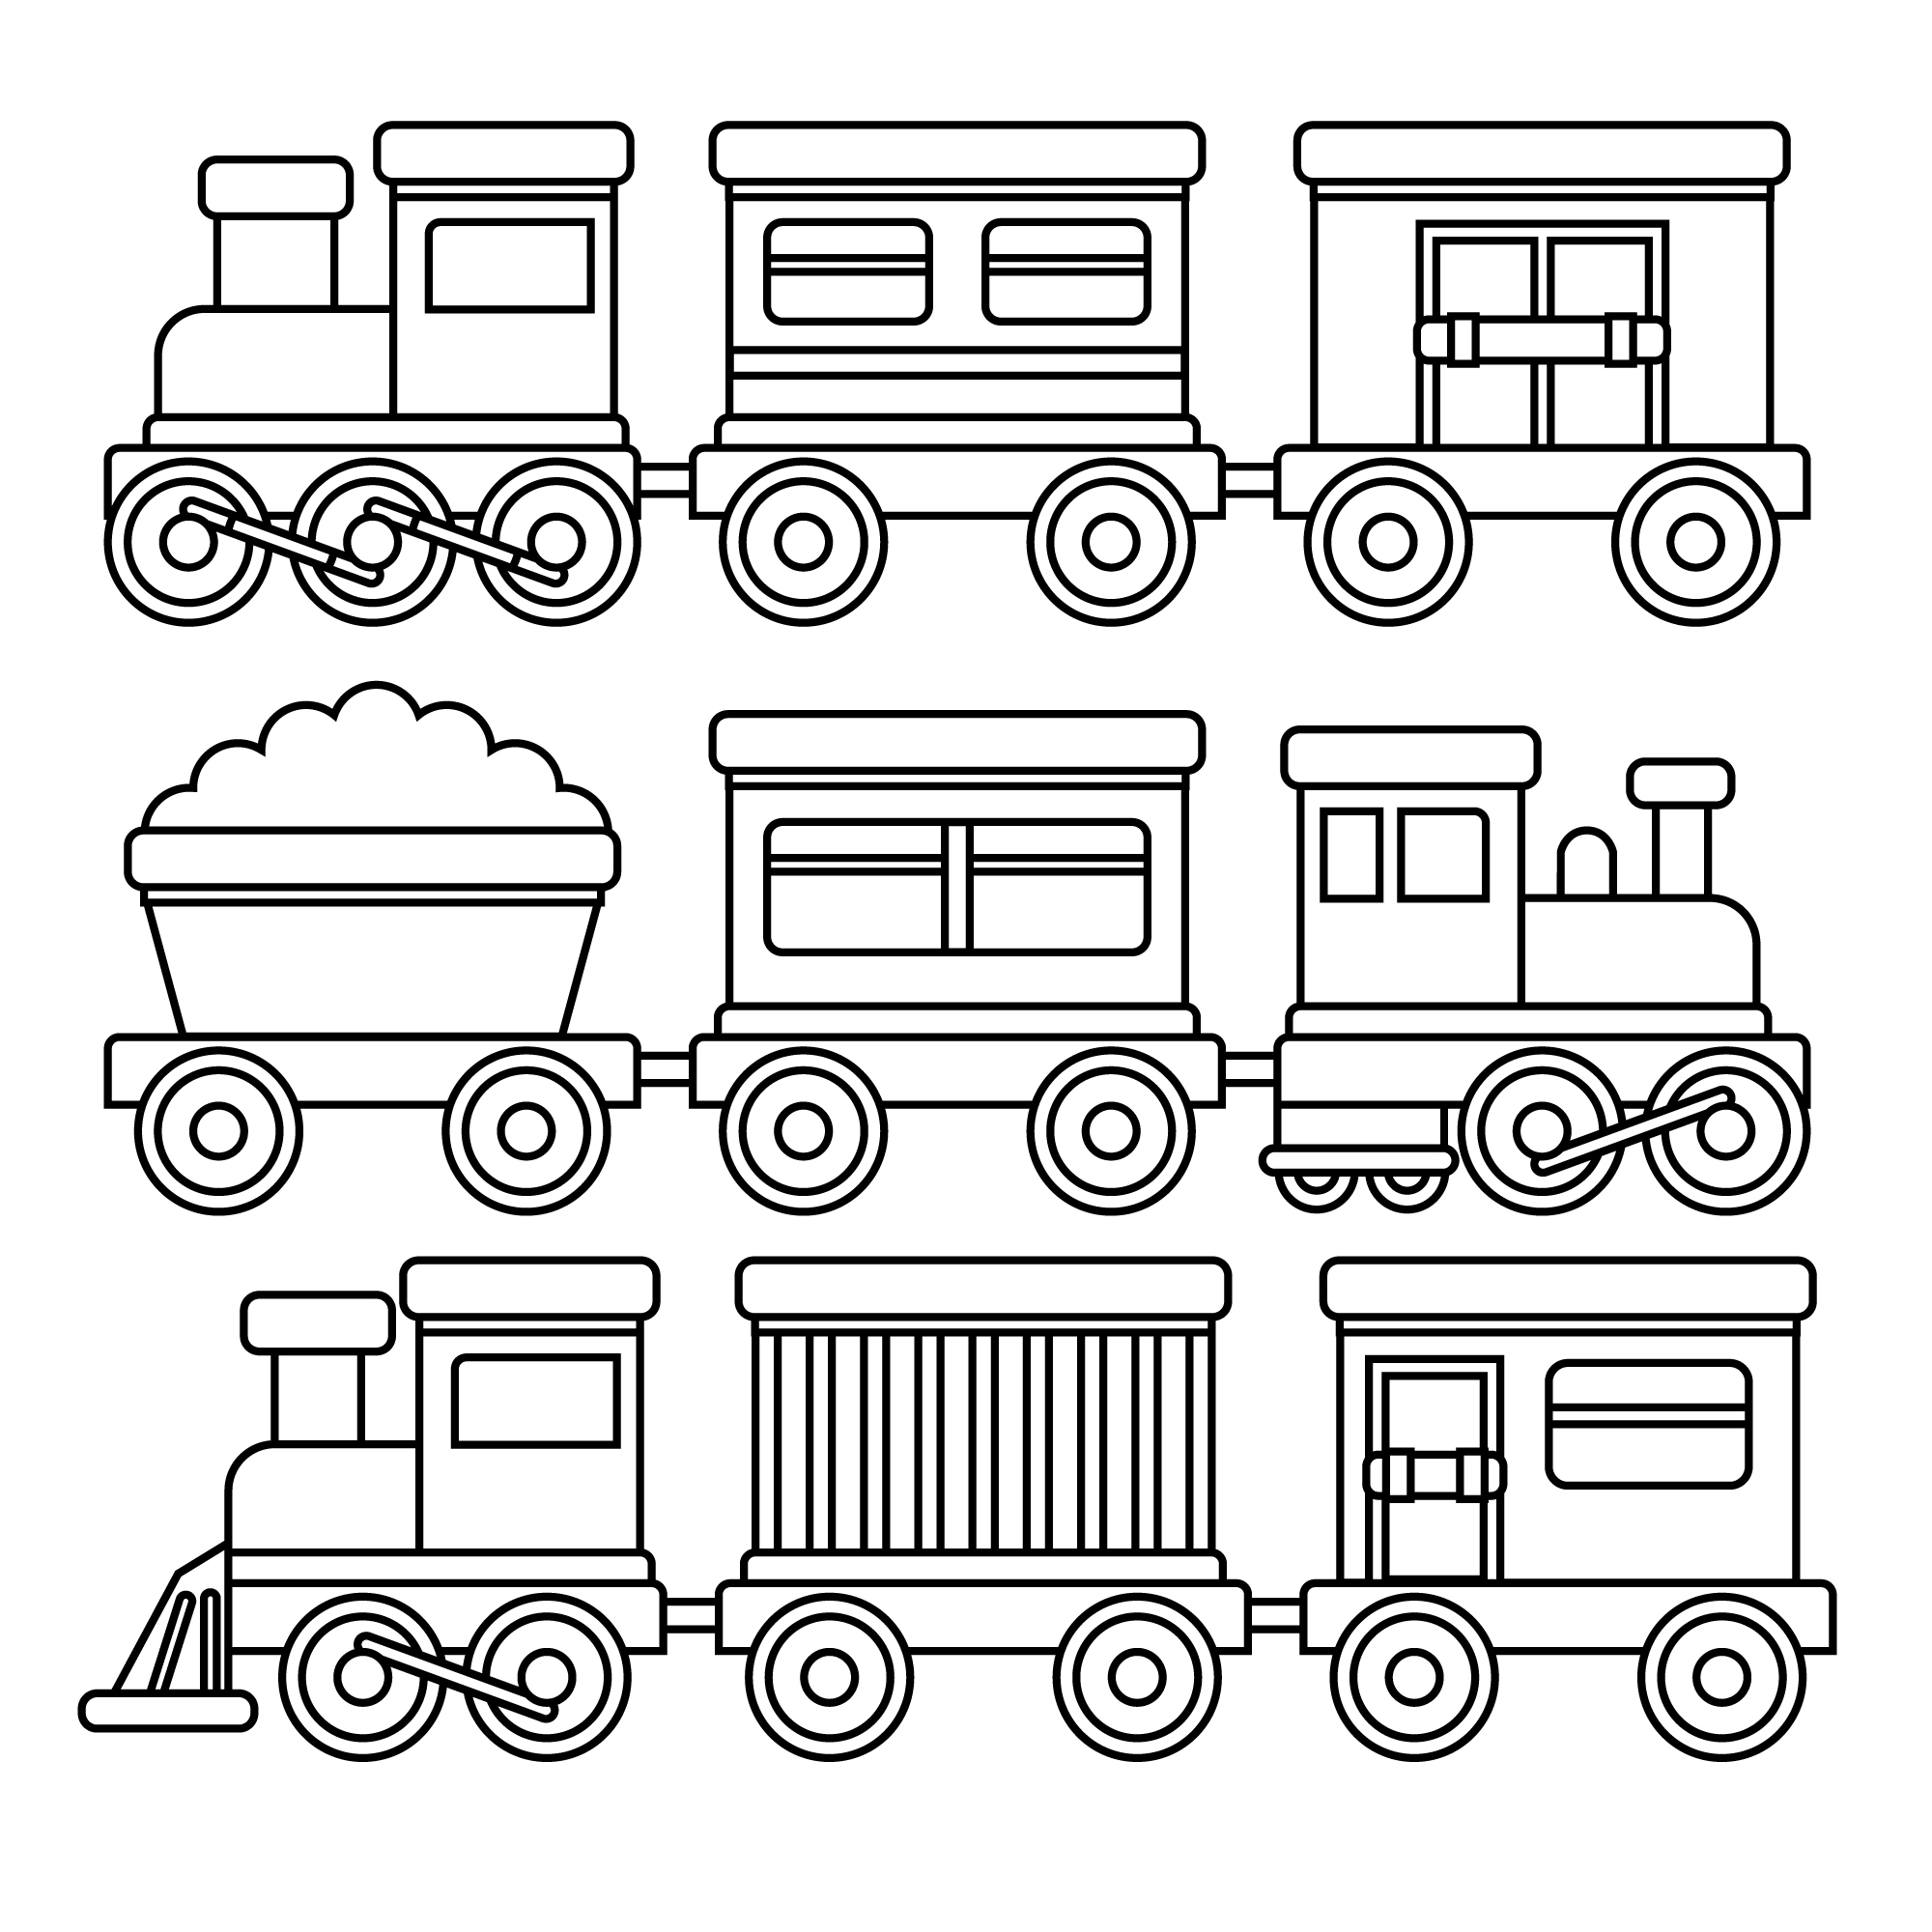 Раскраска набор игрушечных поездов с вагонами формата А4 в высоком качестве